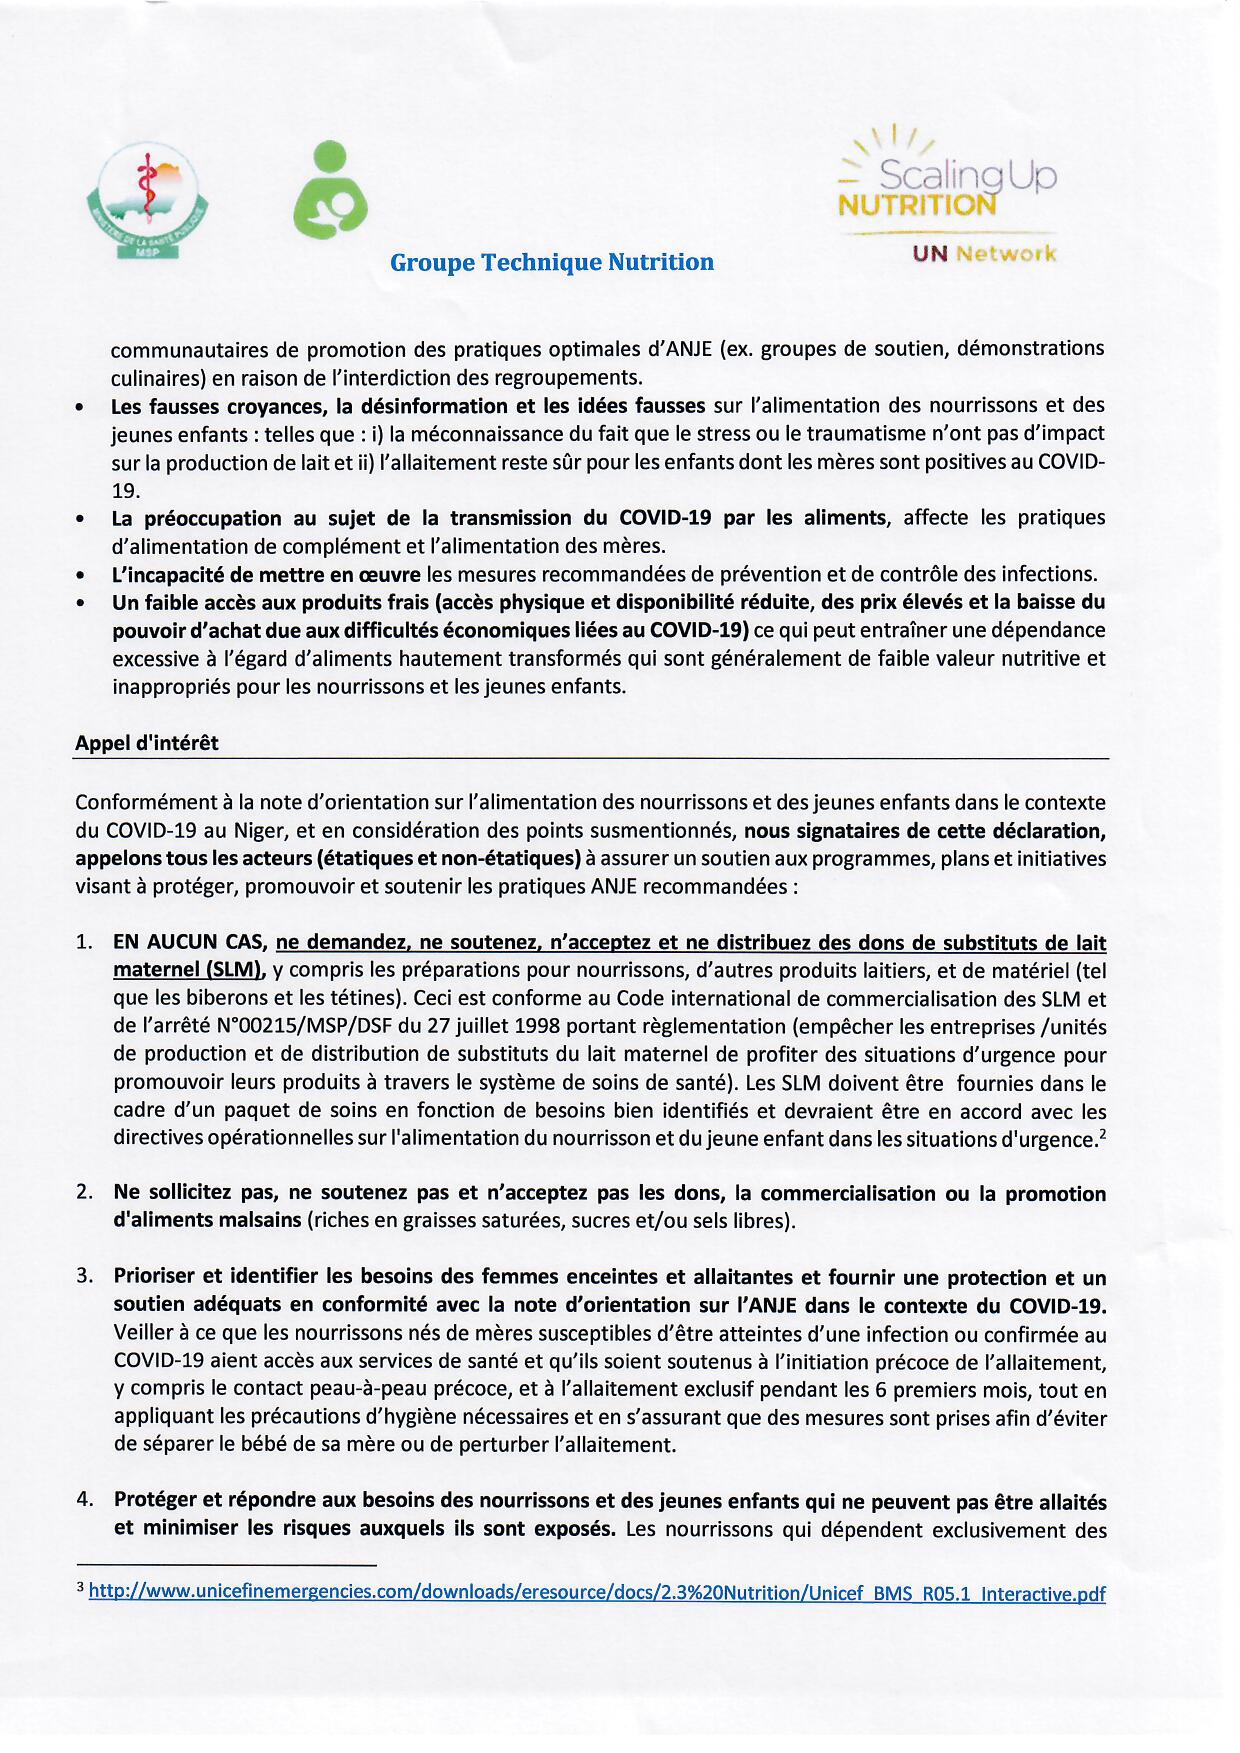 COVID-19; suite de la déclaration conjointe Niger, OMS et système des Nations Unies sur l'alimentation du nourrisson et des jeunes enfants